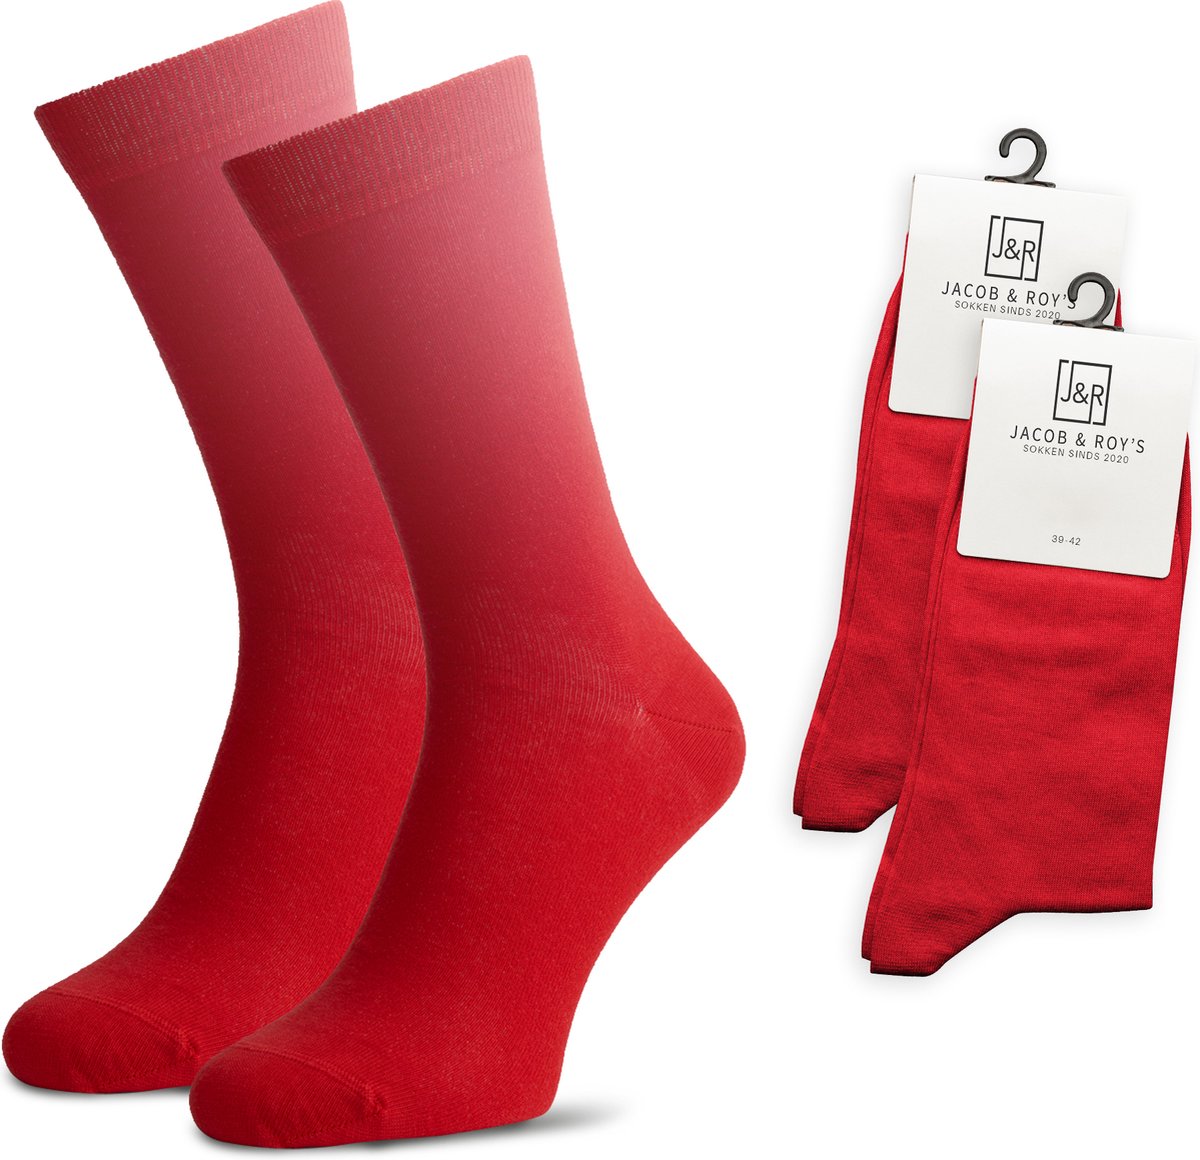 Jacob & Roy's 2 Paar Rode Sokken - Kousen - Heren & Dames - Leuke Sokken - Vrolijke Sokken - Grappige Sokken - Katoen - Maat 39-42 - Funny Socks - Gekleurde Sokken Waar Je Happy Van Wordt